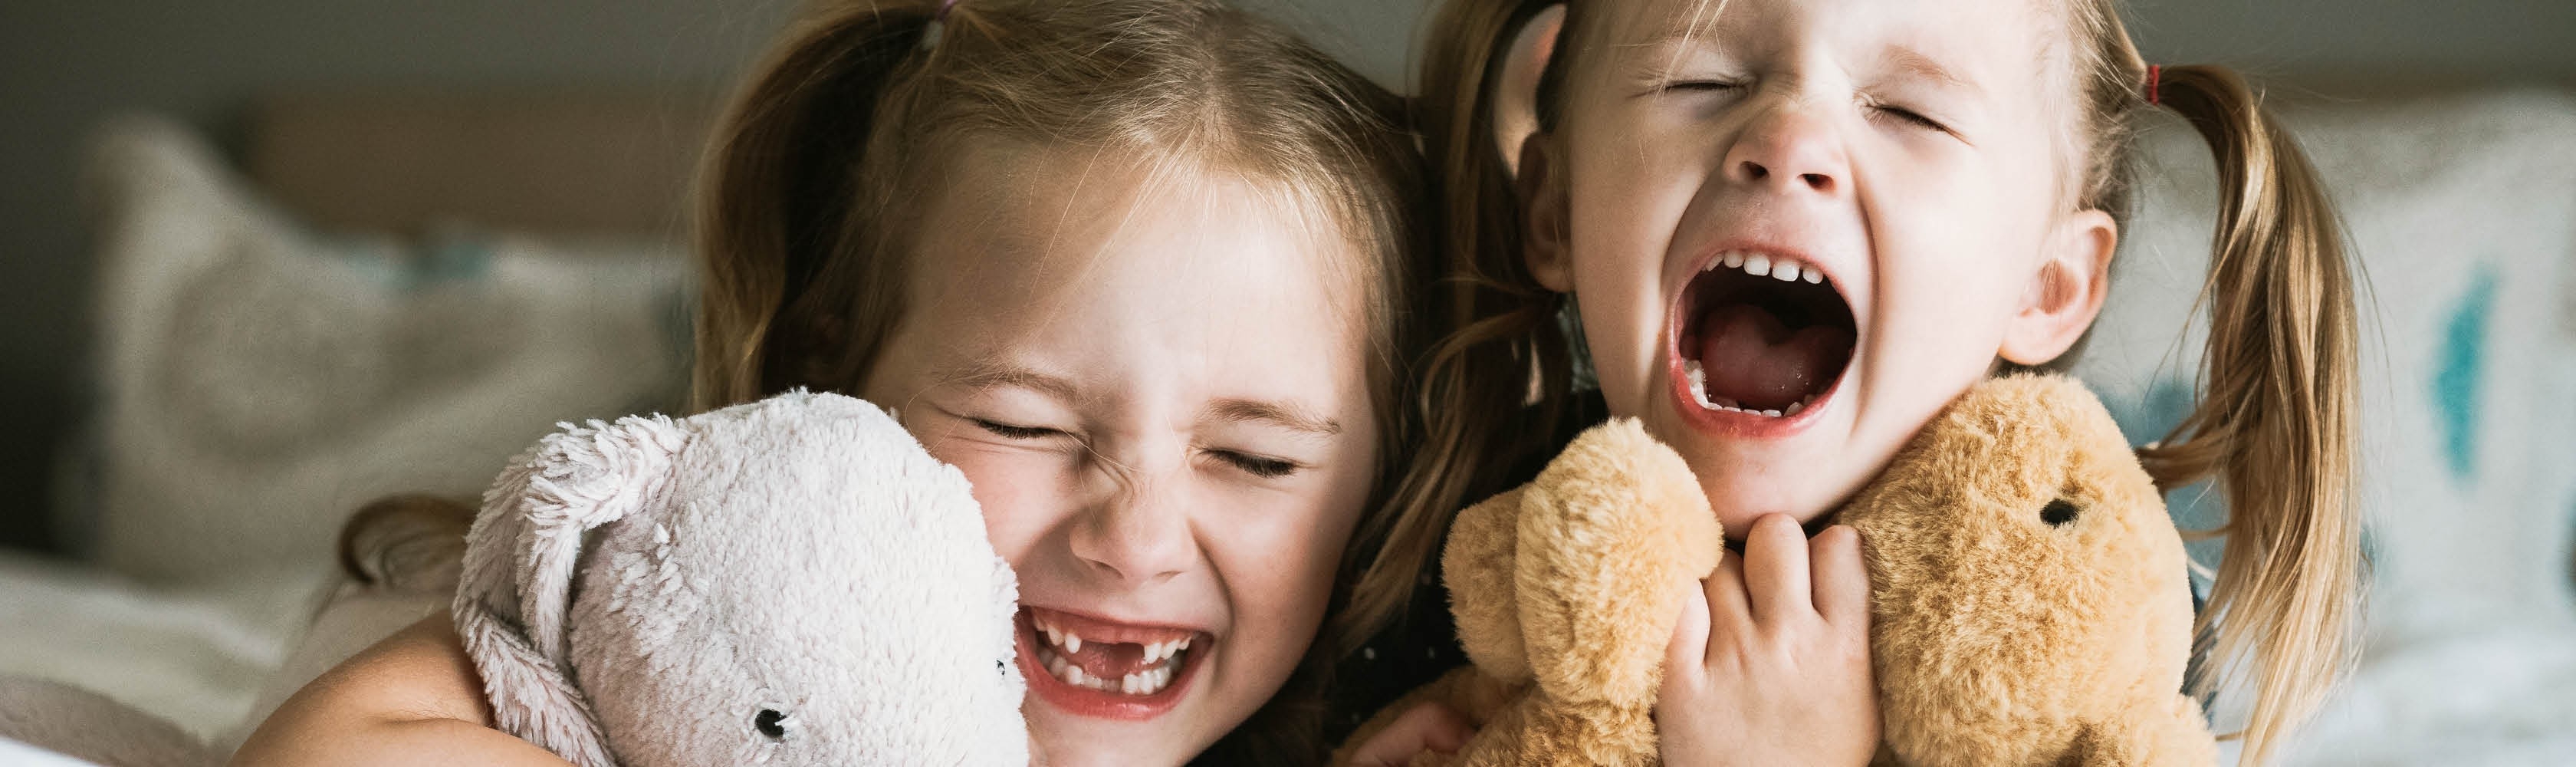 Deux filles rient. Conclure une assurance pour soins dentaires en vaut la peine, surtout pour les enfants.